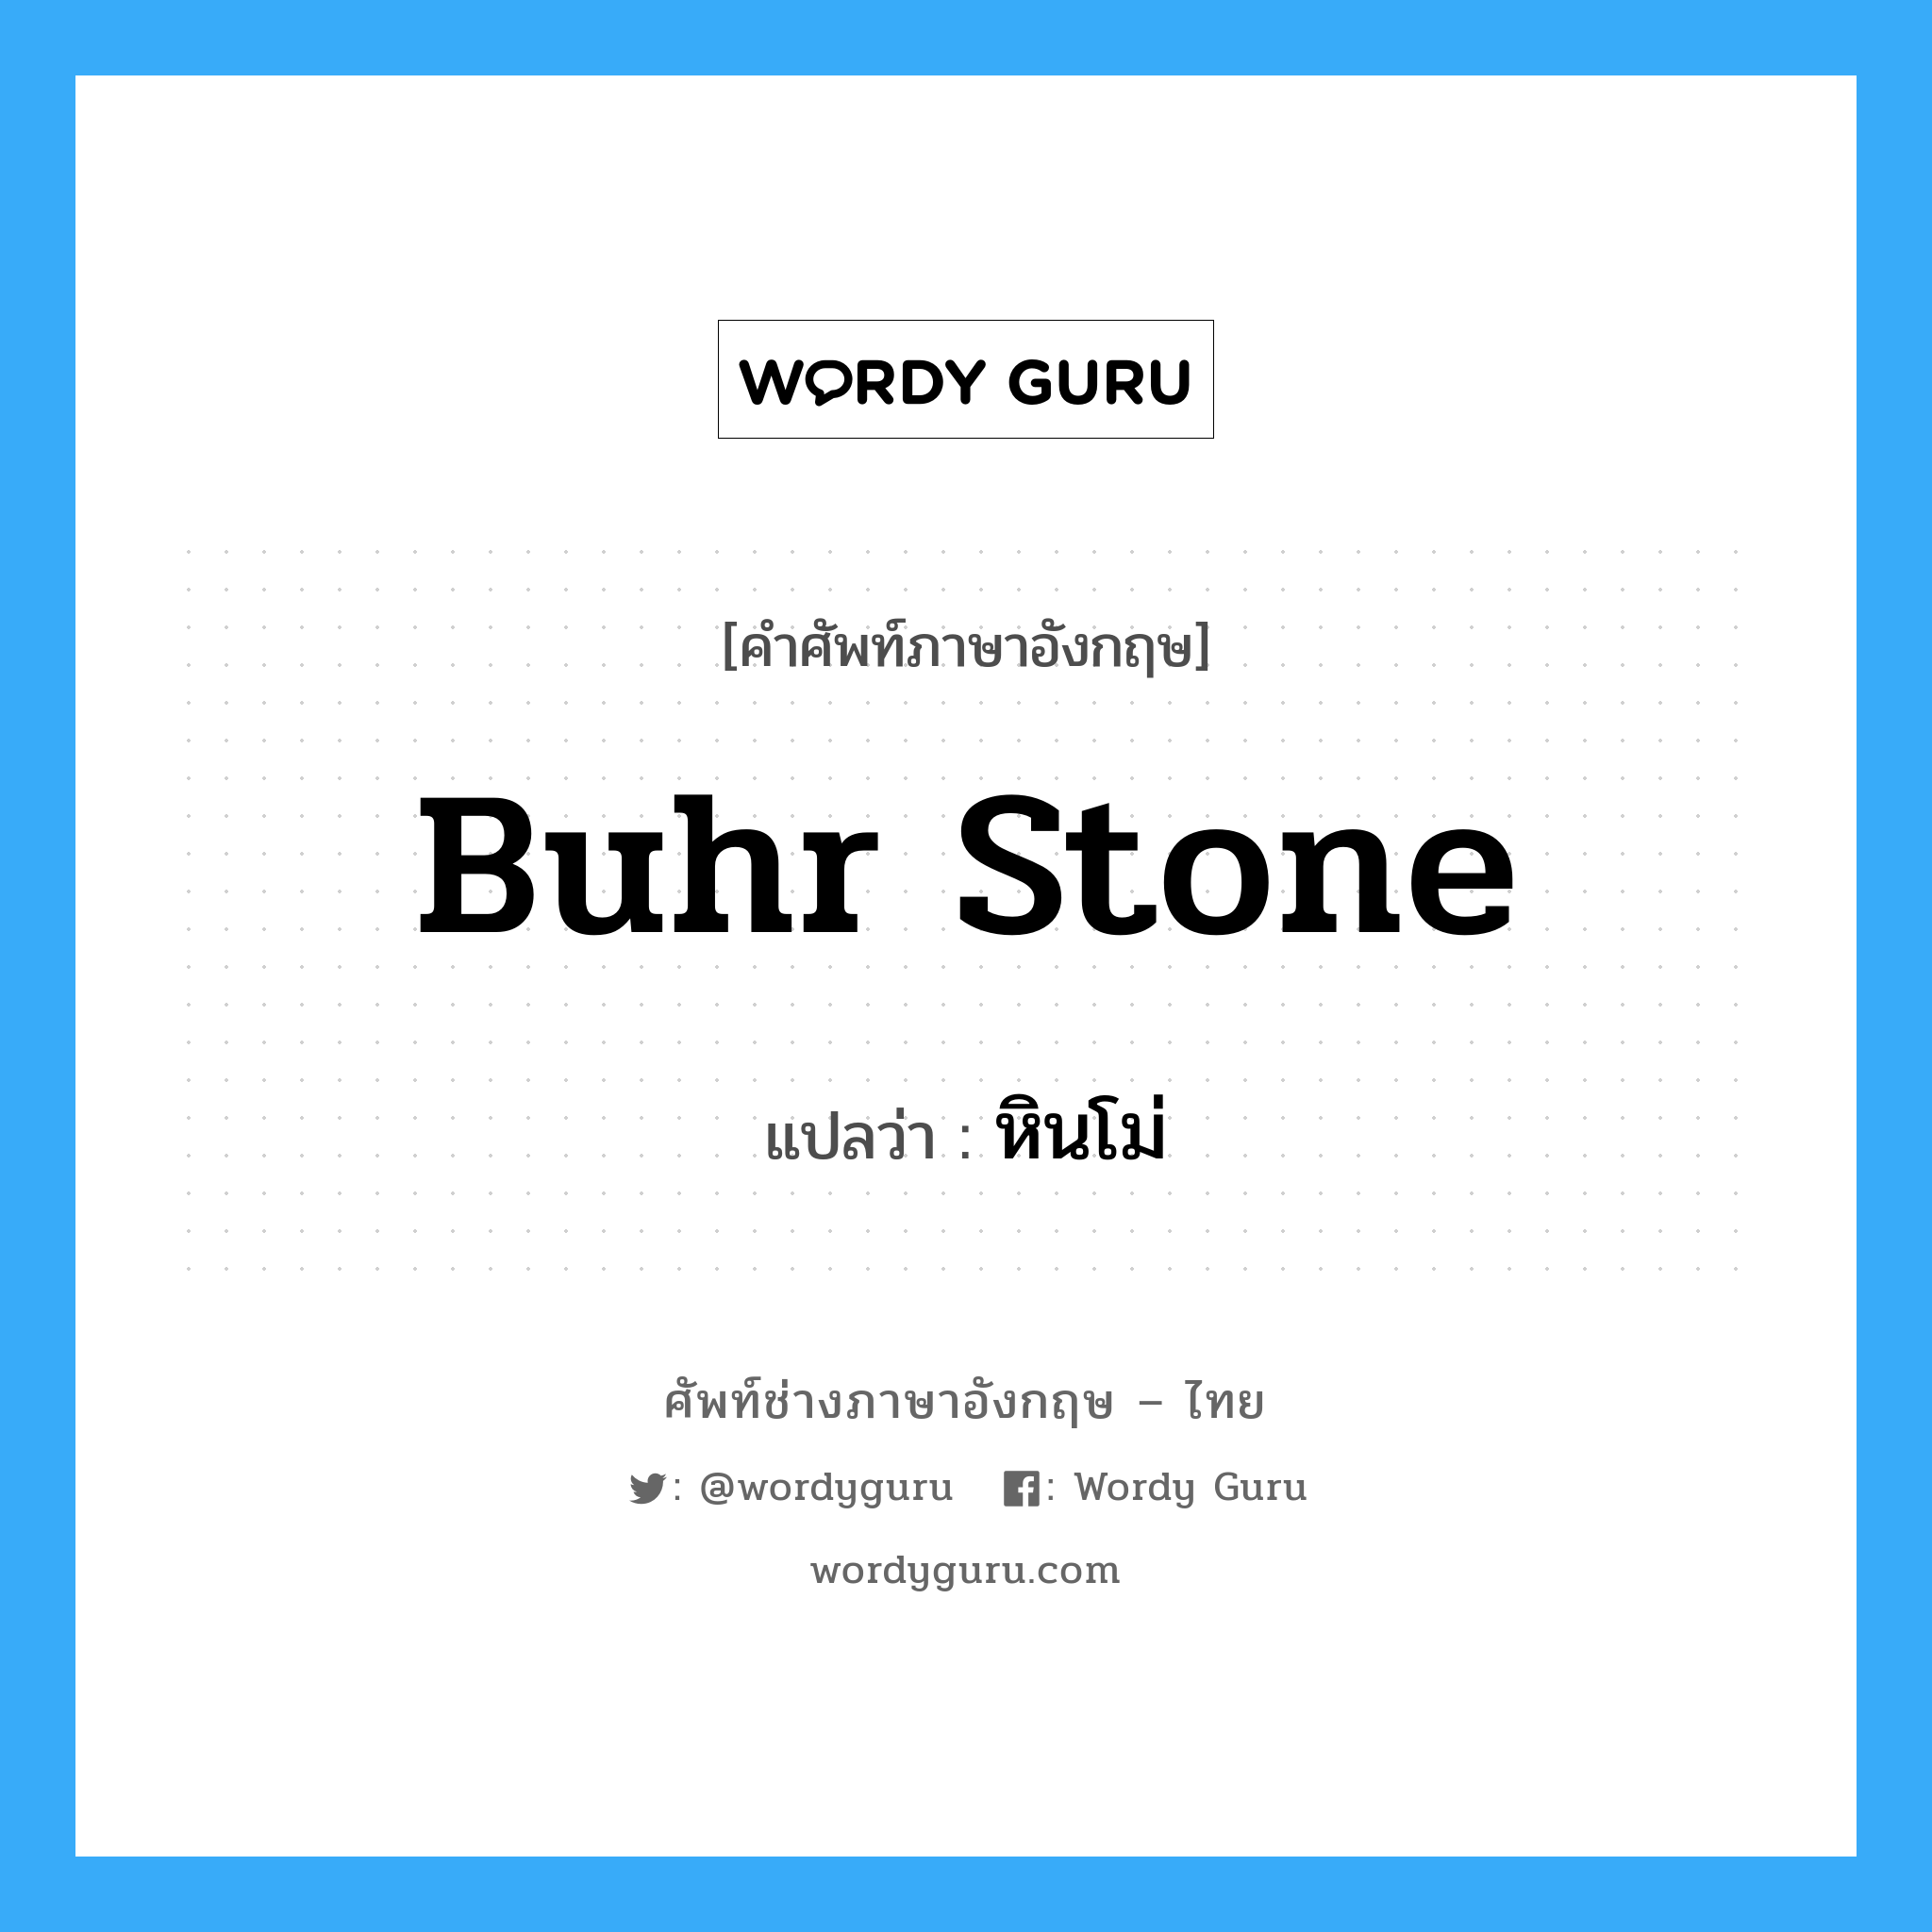 หินโม่ ภาษาอังกฤษ?, คำศัพท์ช่างภาษาอังกฤษ - ไทย หินโม่ คำศัพท์ภาษาอังกฤษ หินโม่ แปลว่า buhr stone